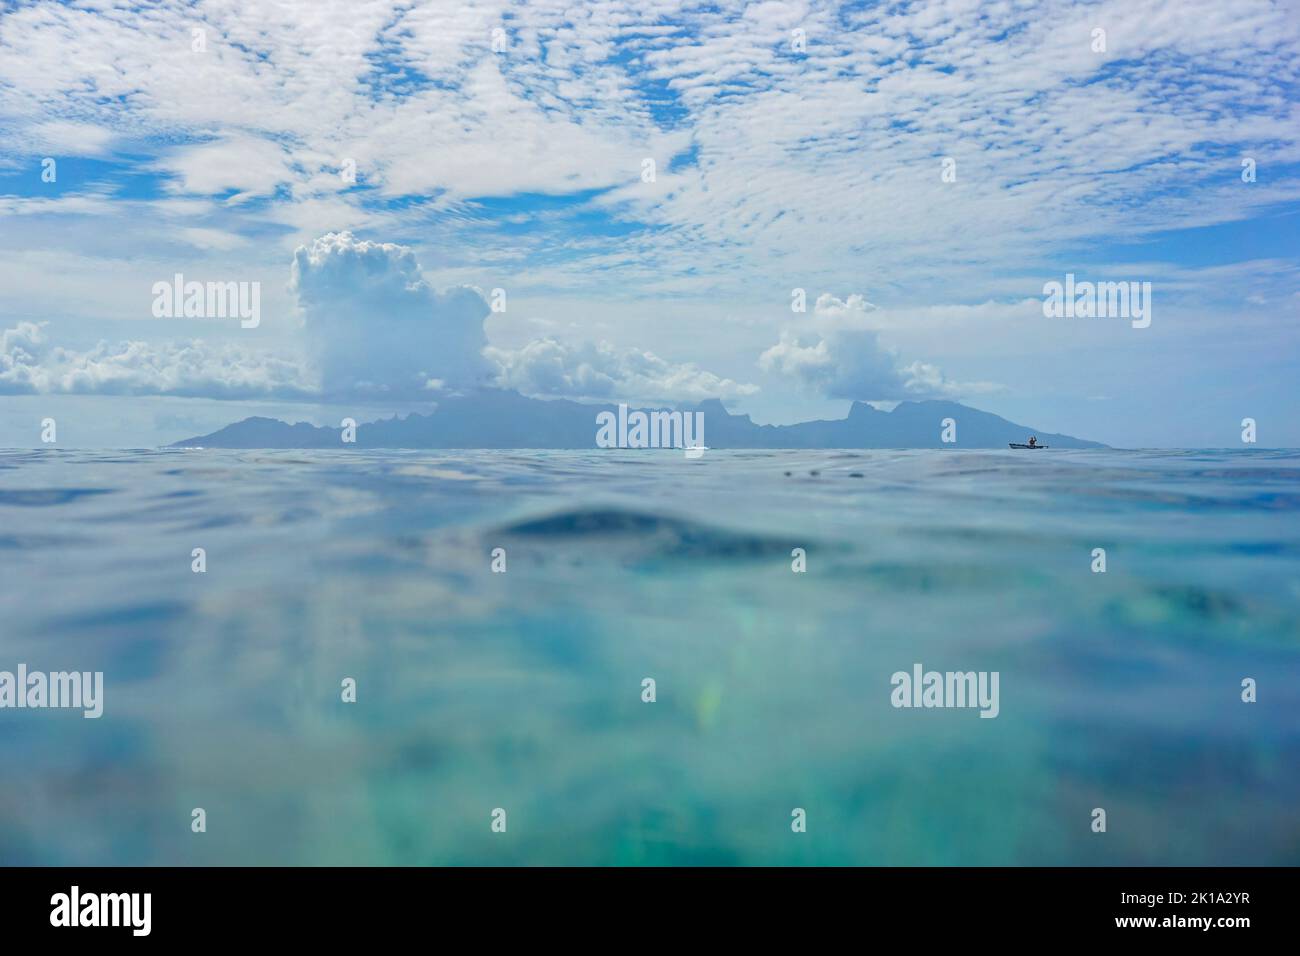 Moorea Insel am Horizont von der Wasseroberfläche aus gesehen mit blauem Himmel und Wolken, tropischer Meereslandschaft, Südpazifik, Französisch-Polynesien Stockfoto